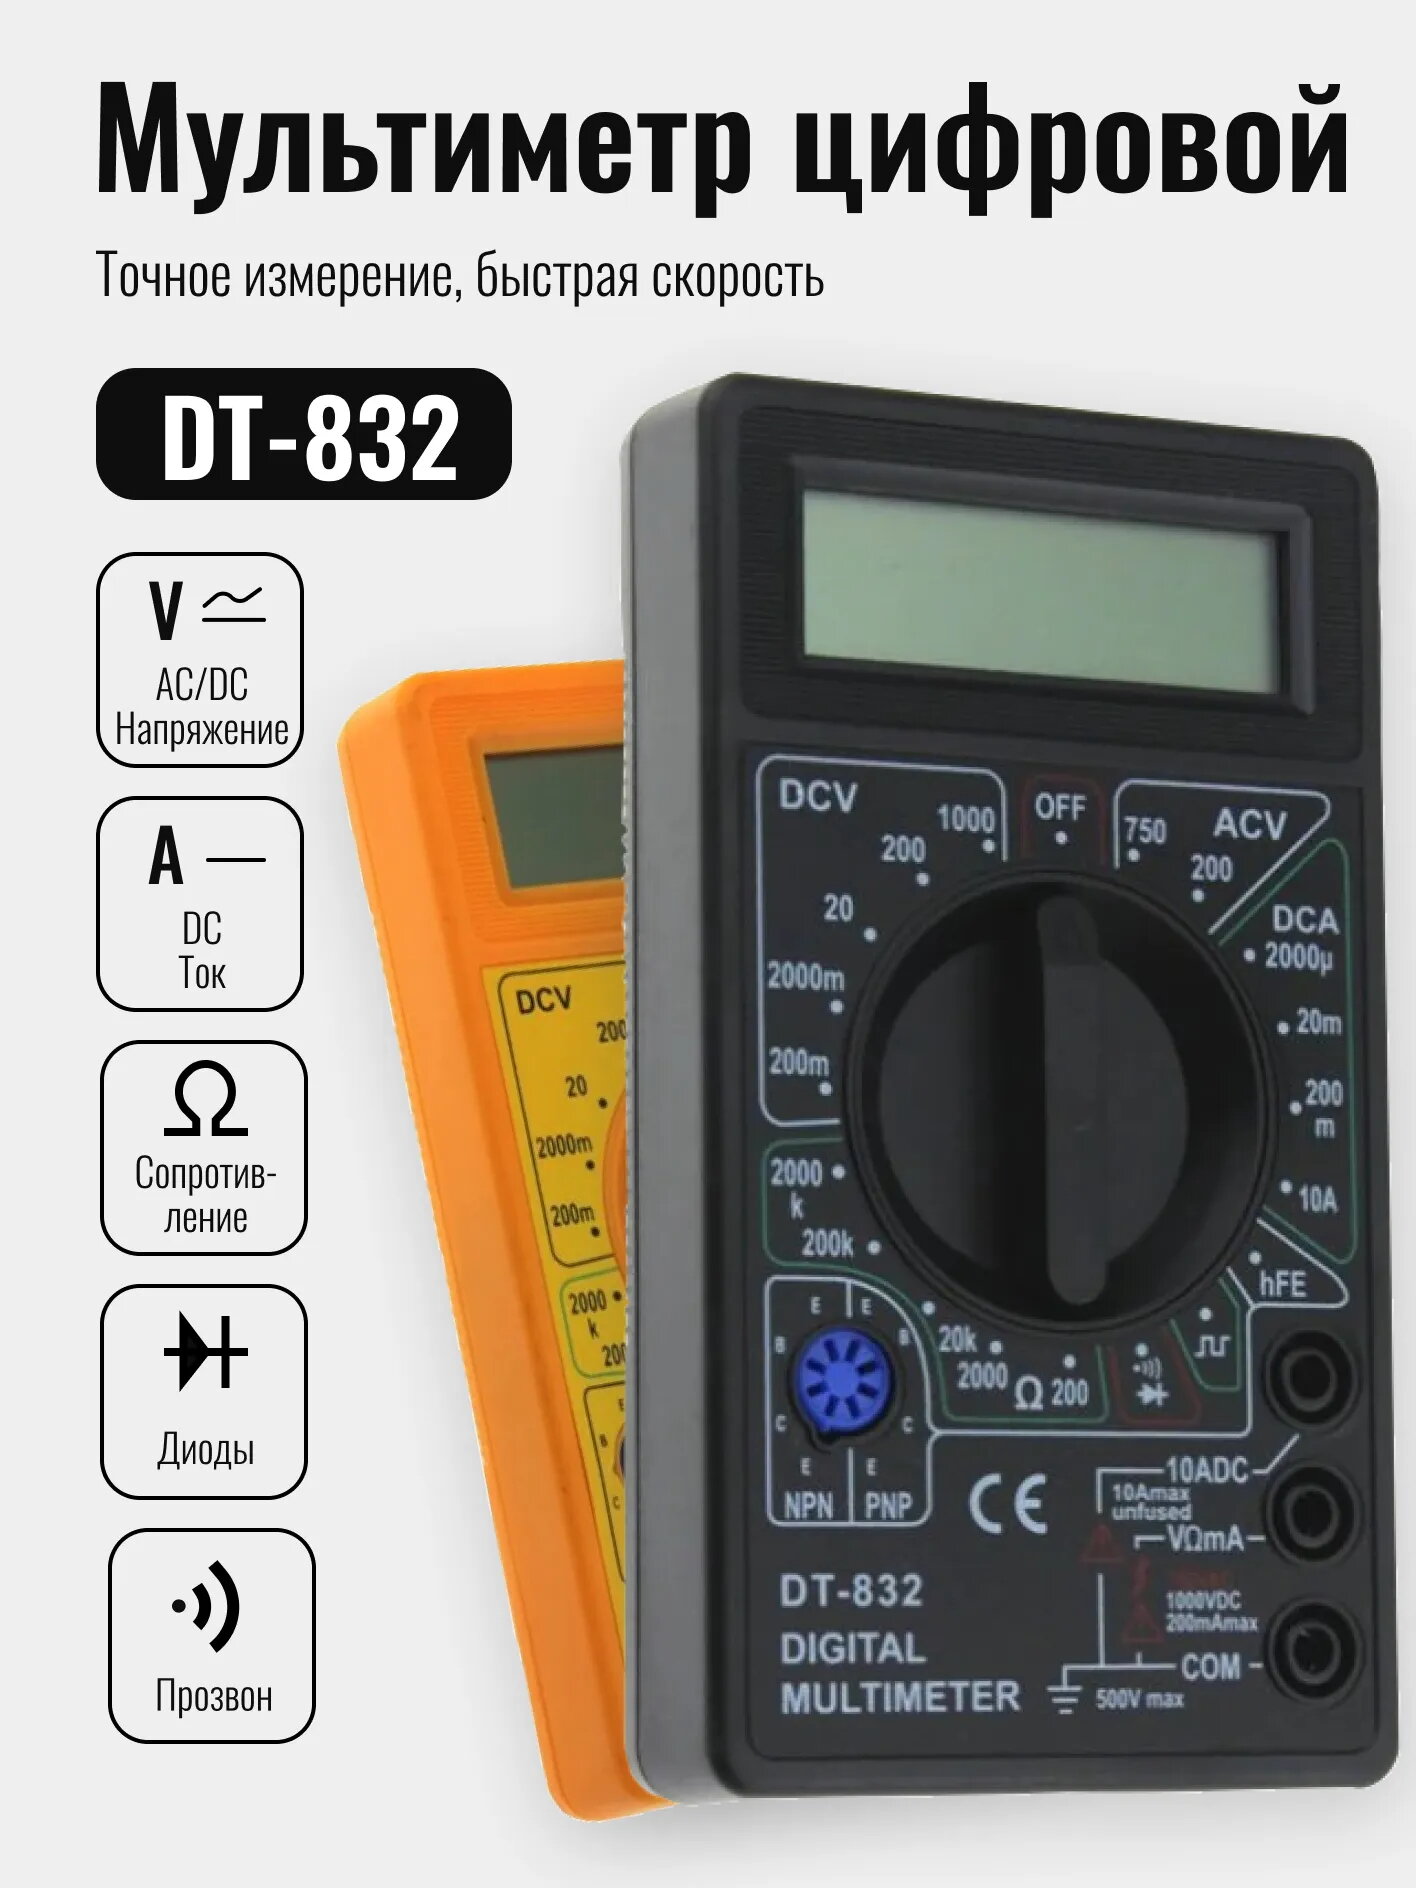 Мультиметр DT-832 с прозвонкой, инструкция по эксплуатации на русском языке, с батарейкой, желтый - фотография № 2